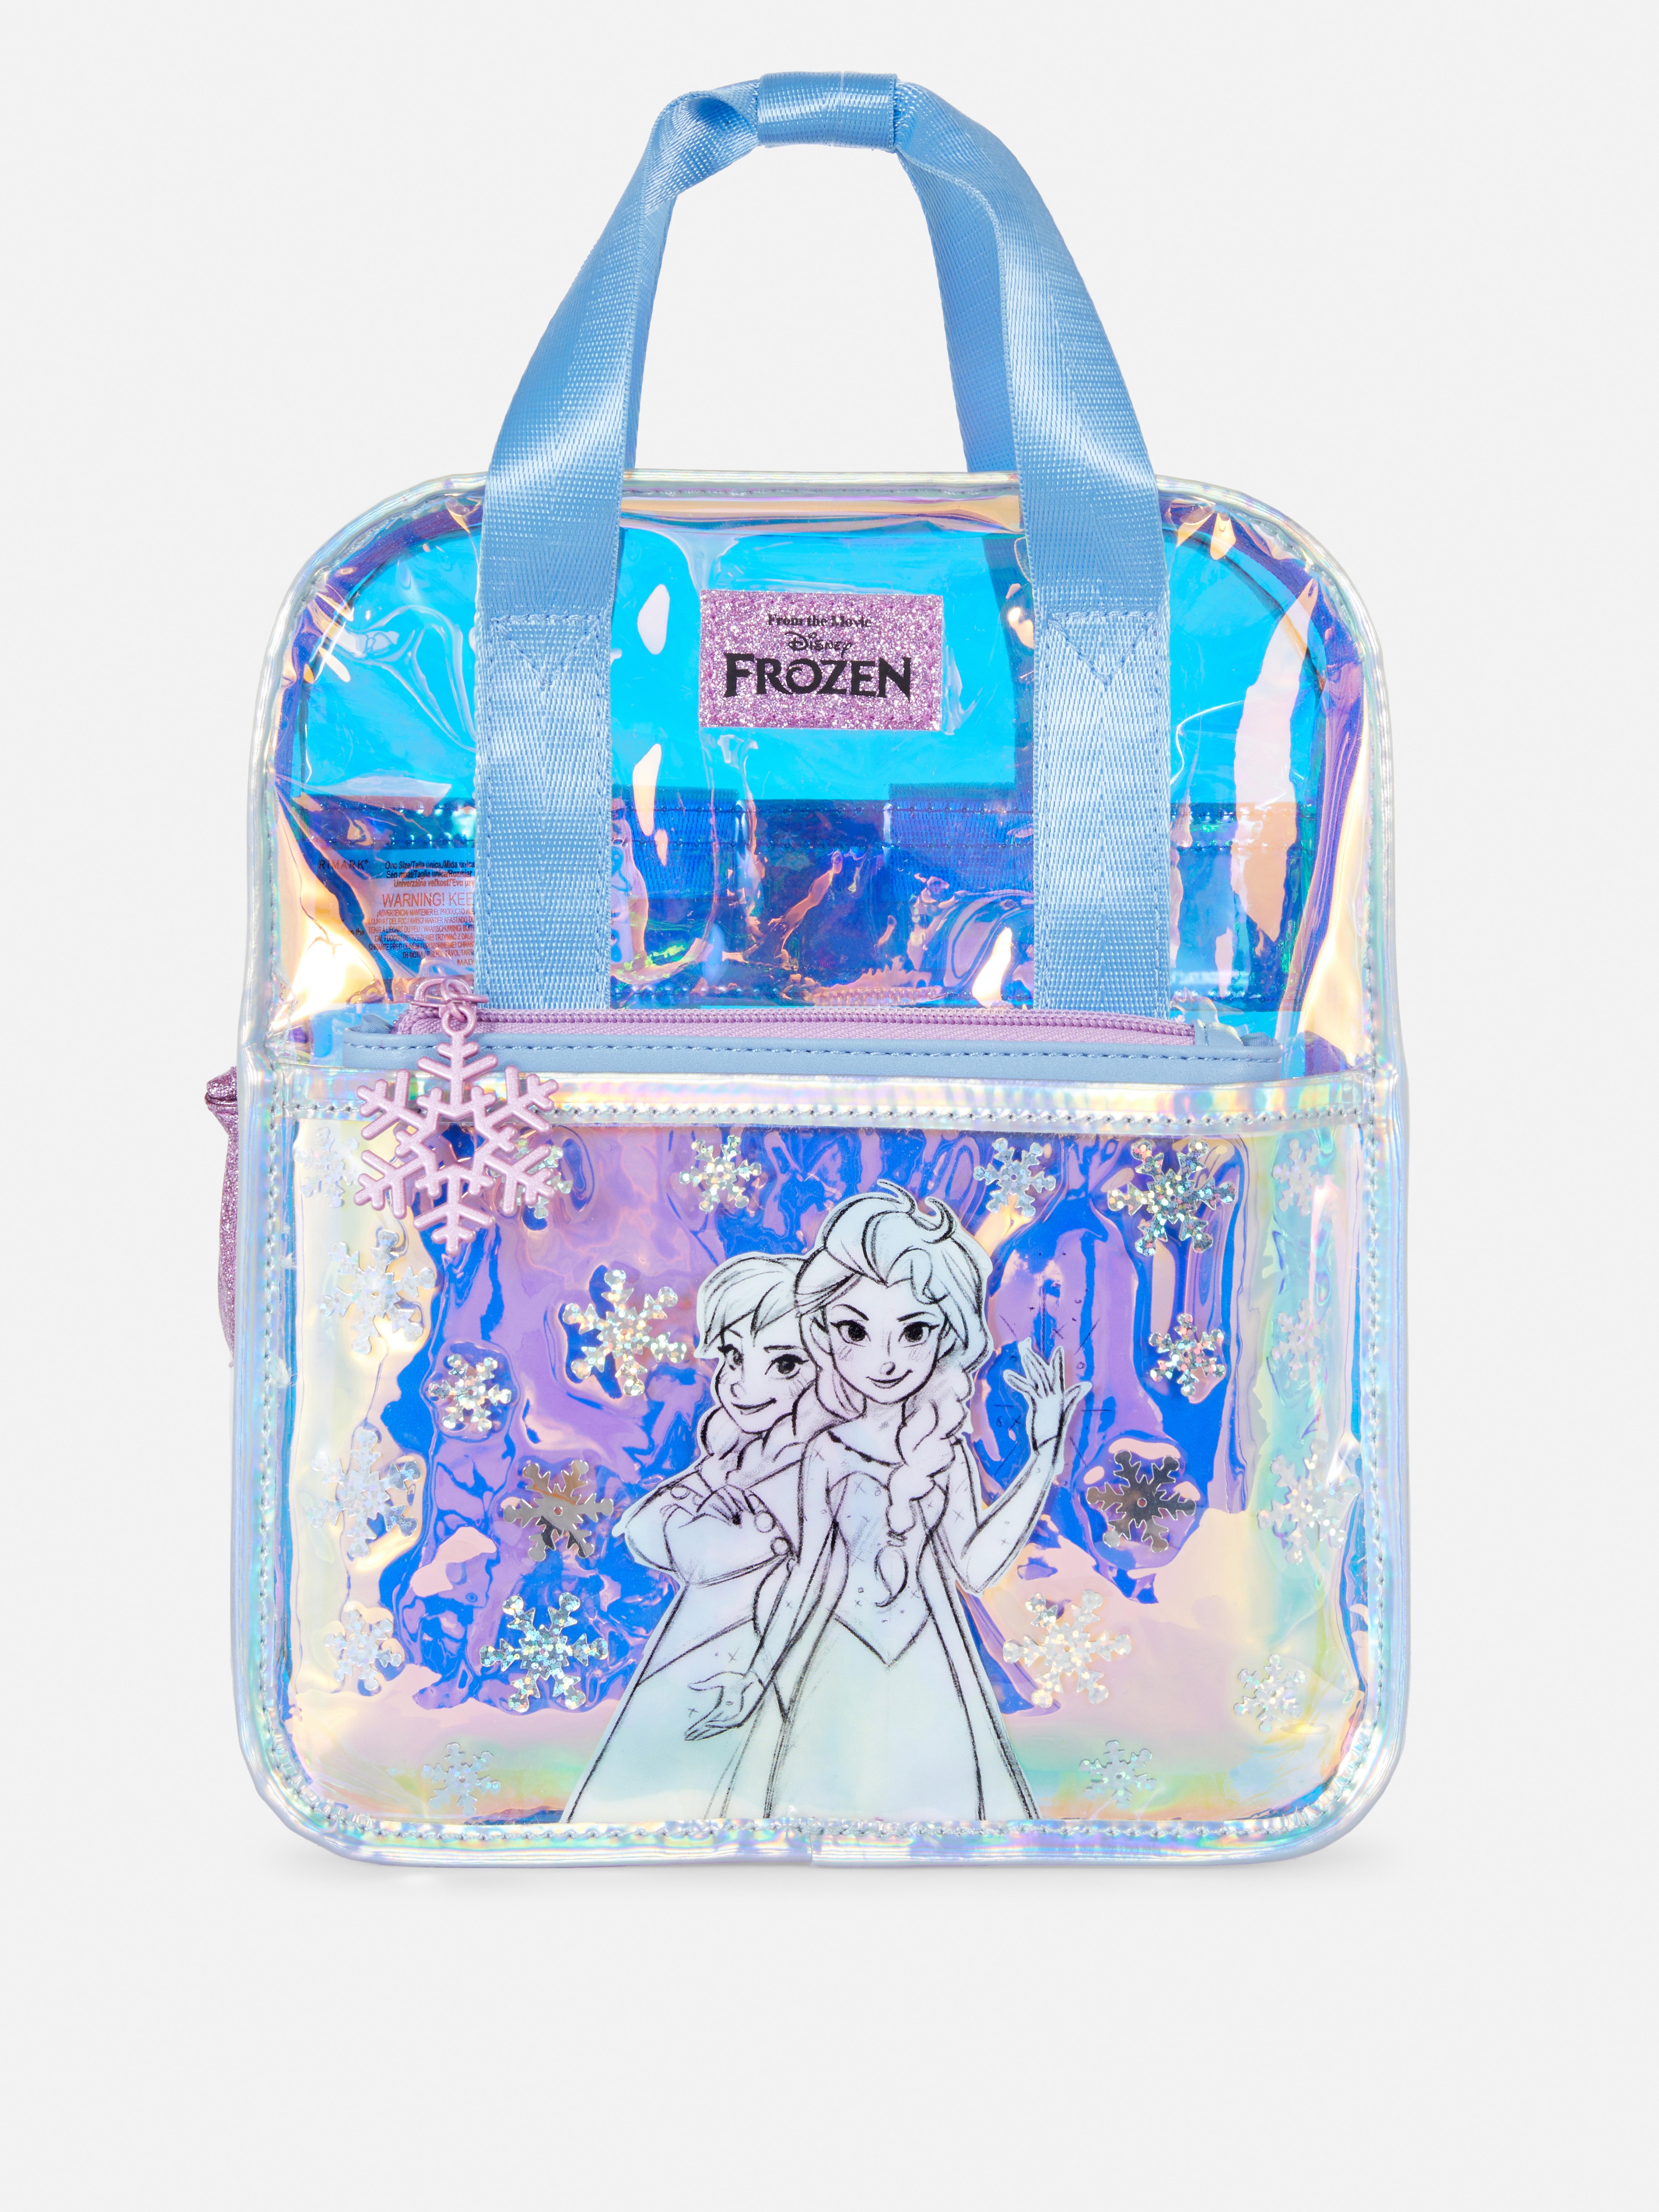 Disney's Frozen Iridescent Snowflake Sequin Backpack